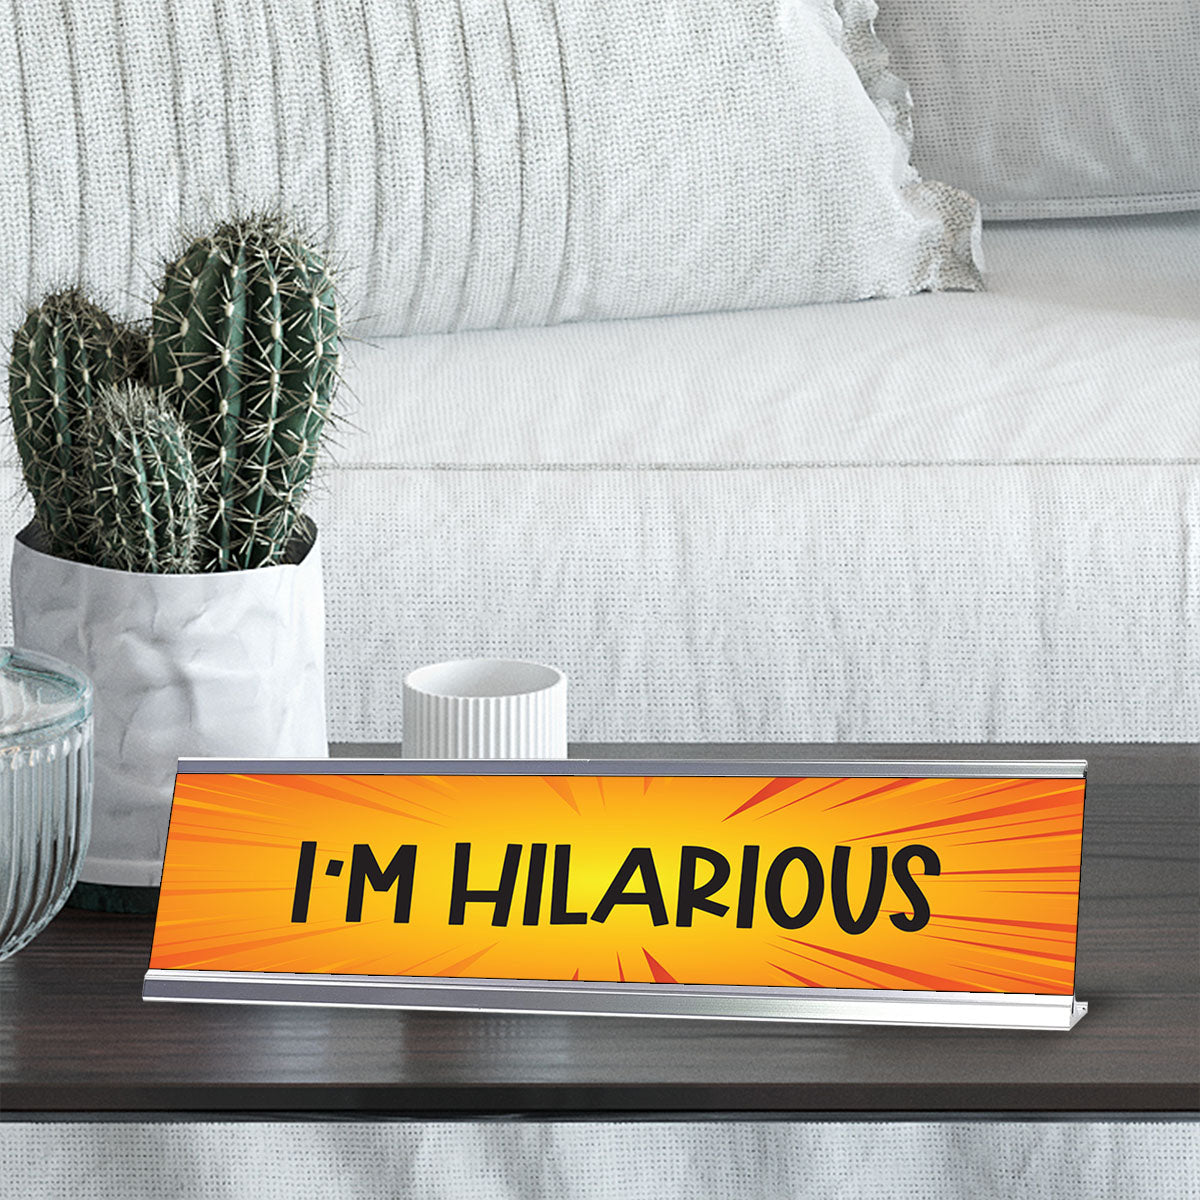 I'm Hilarious, Orange Designer Series Desk Sign, Novelty Nameplate (2 x 8")